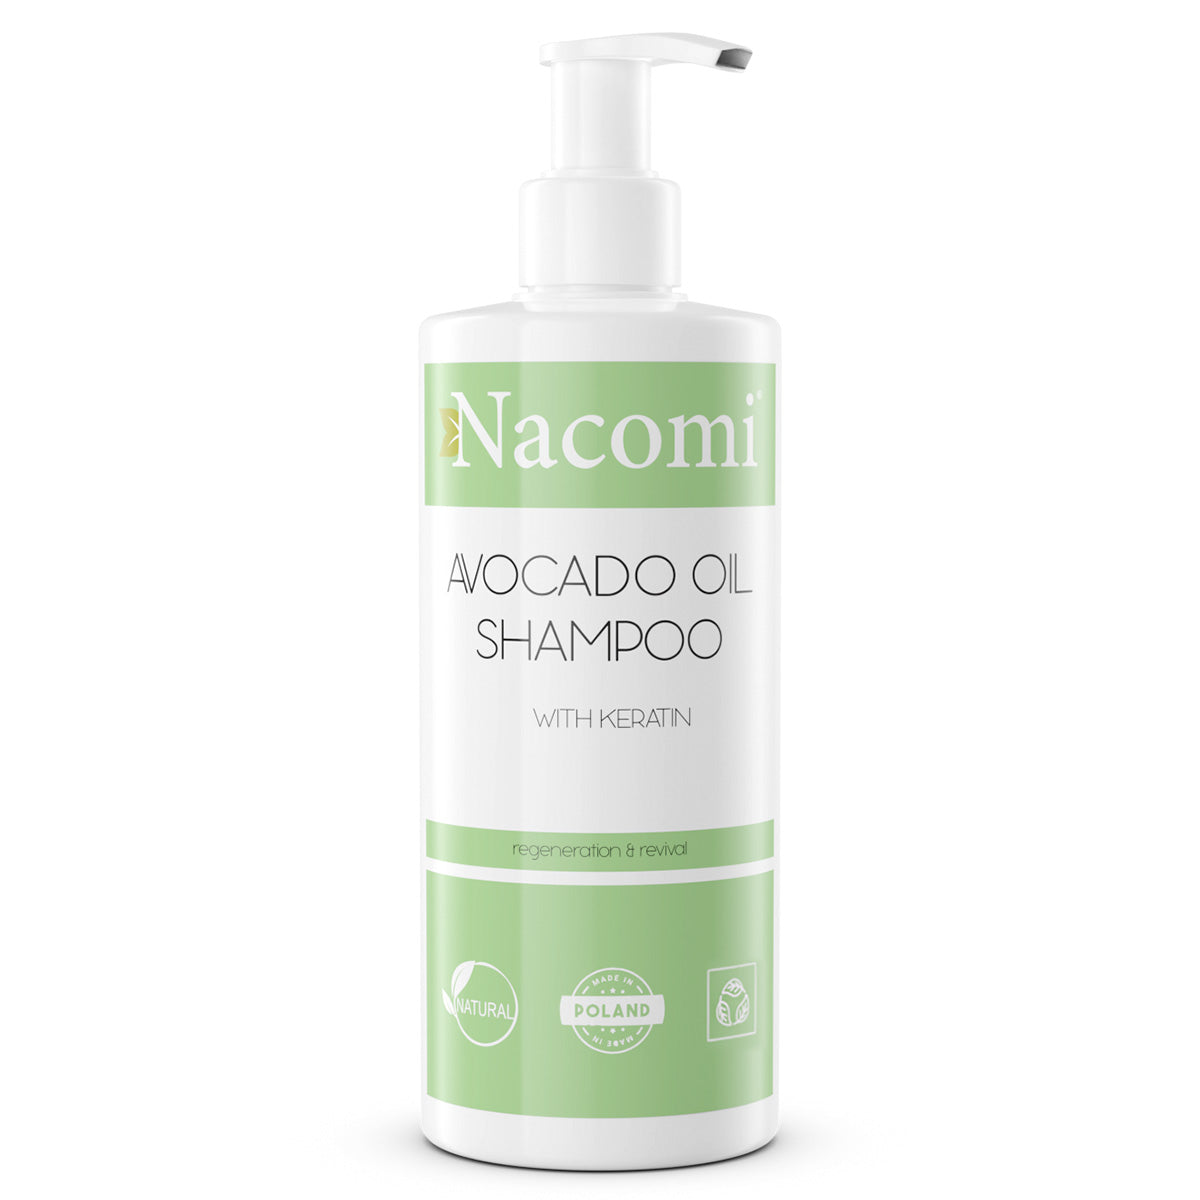 цена Nacomi Шампунь для волос Avocado Oil с маслом авокадо 250мл